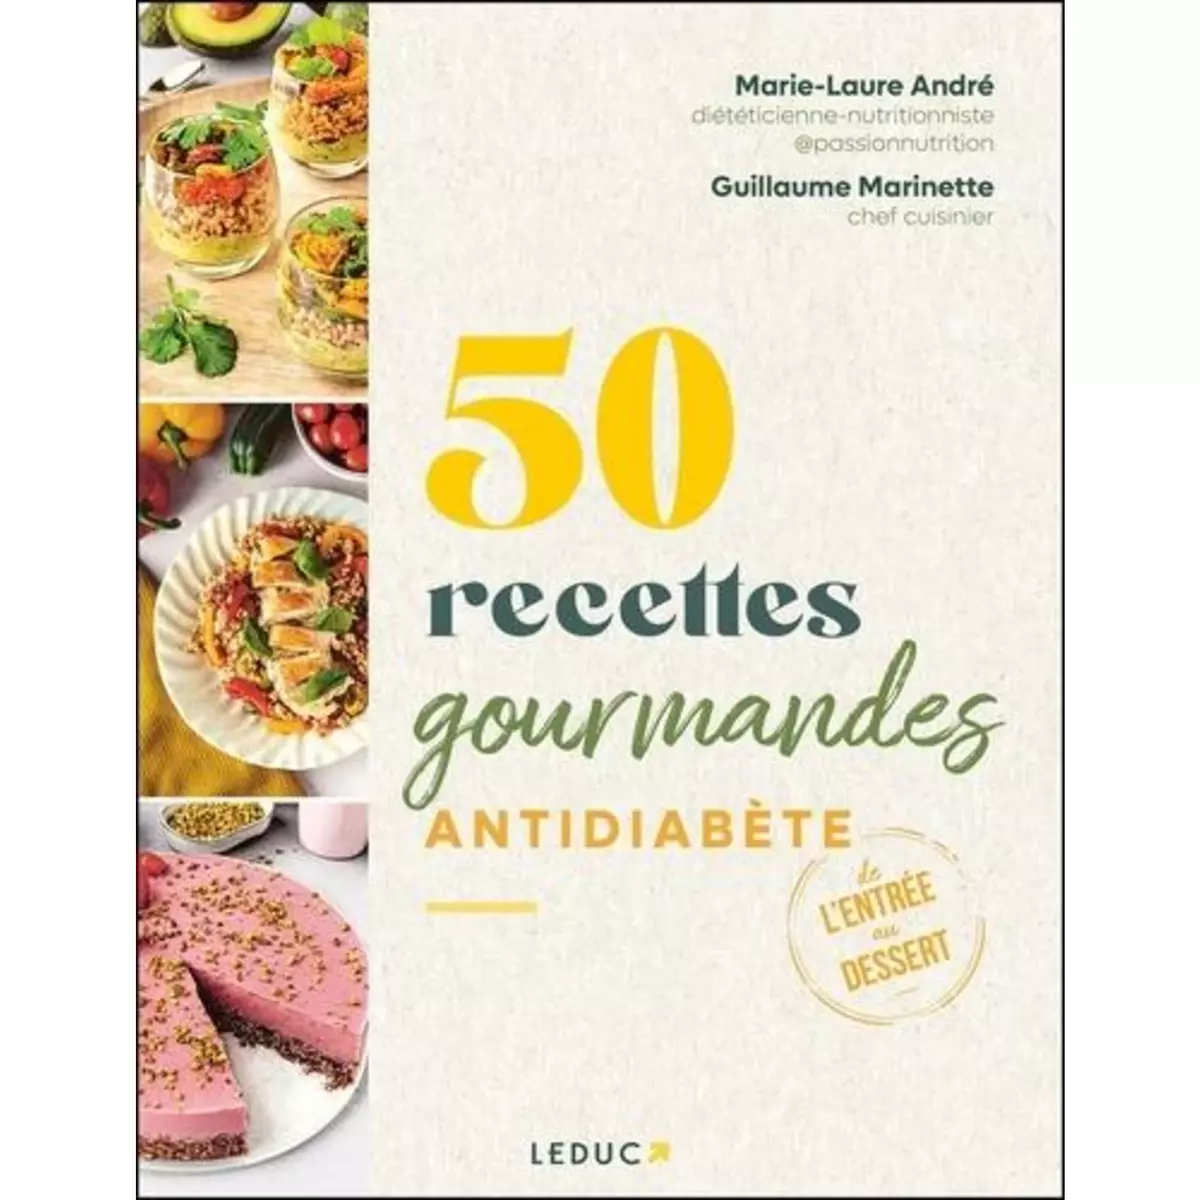  50 RECETTES GOURMANDES ANTIDIABETE, André Marie-Laure